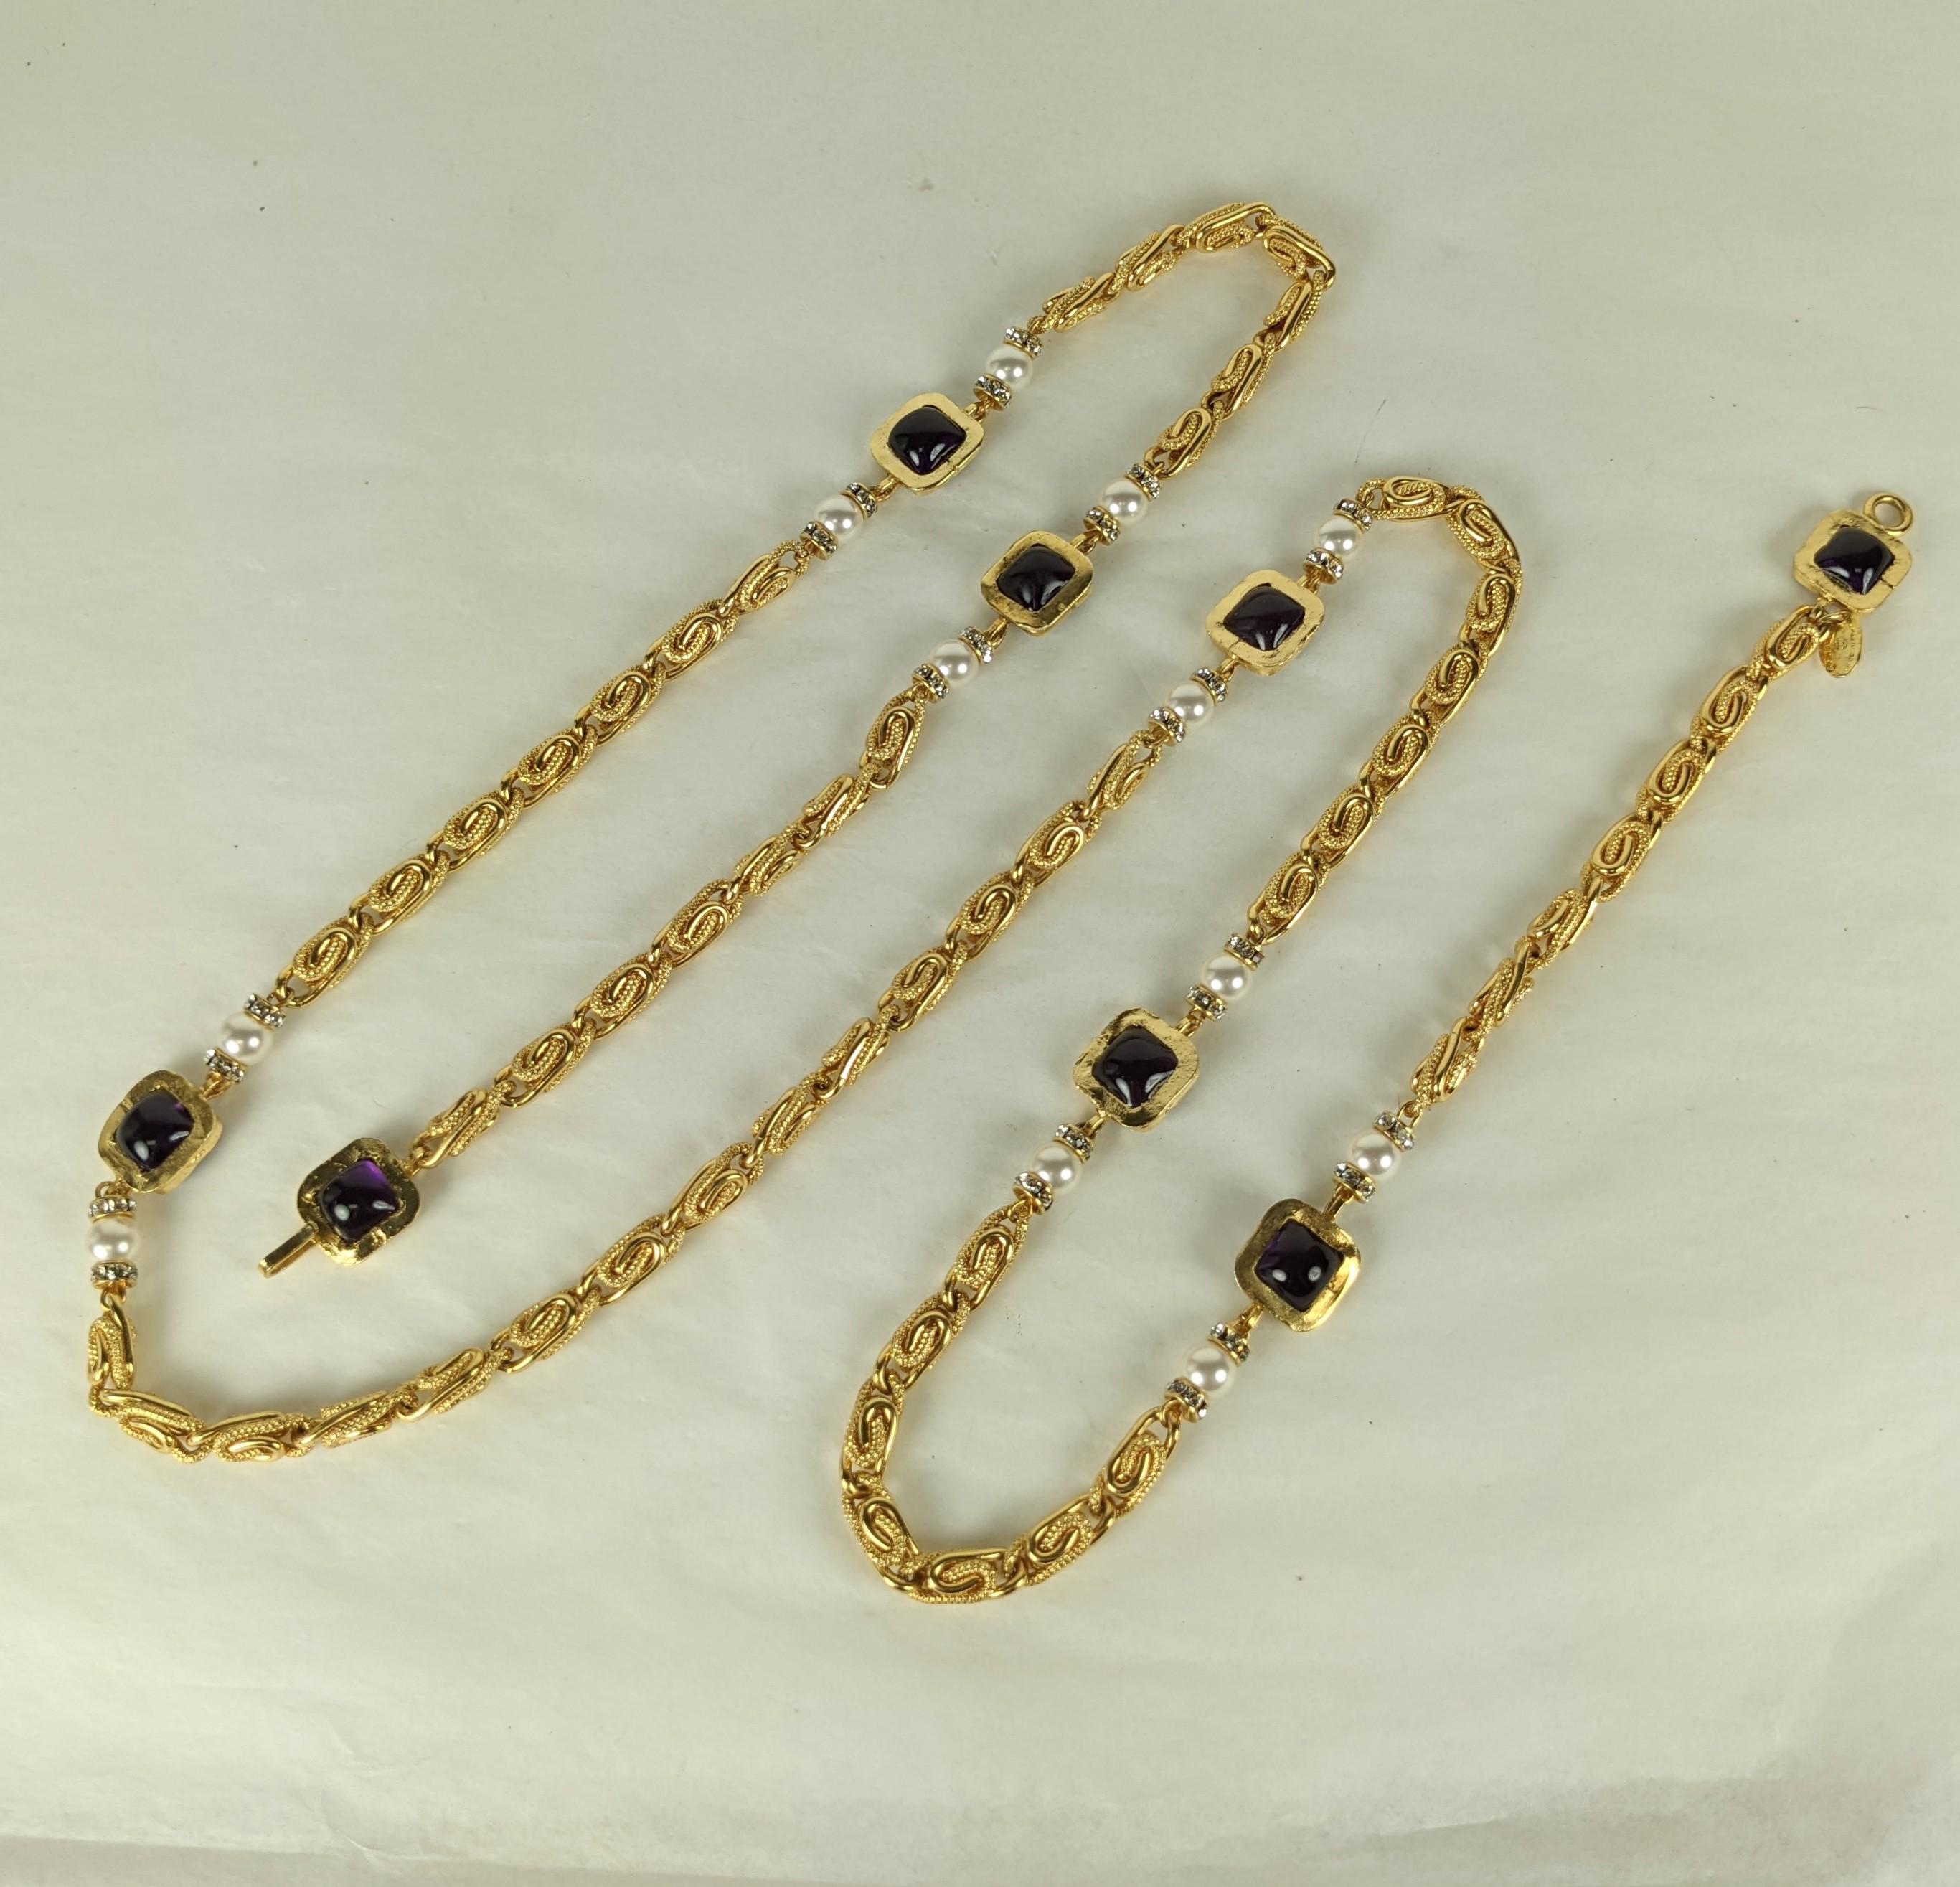 Maison Gripoix für Chanel gegossene Glasamethyste, Kunstperle und lange Kette. Byzantinische Halskette mit quadratischen Stationen aus gegossenem Amythest-Glasemail, Kunstperlen und Kristallrondellen mit griechischer Schlüsselkette. 
Ausgezeichneter